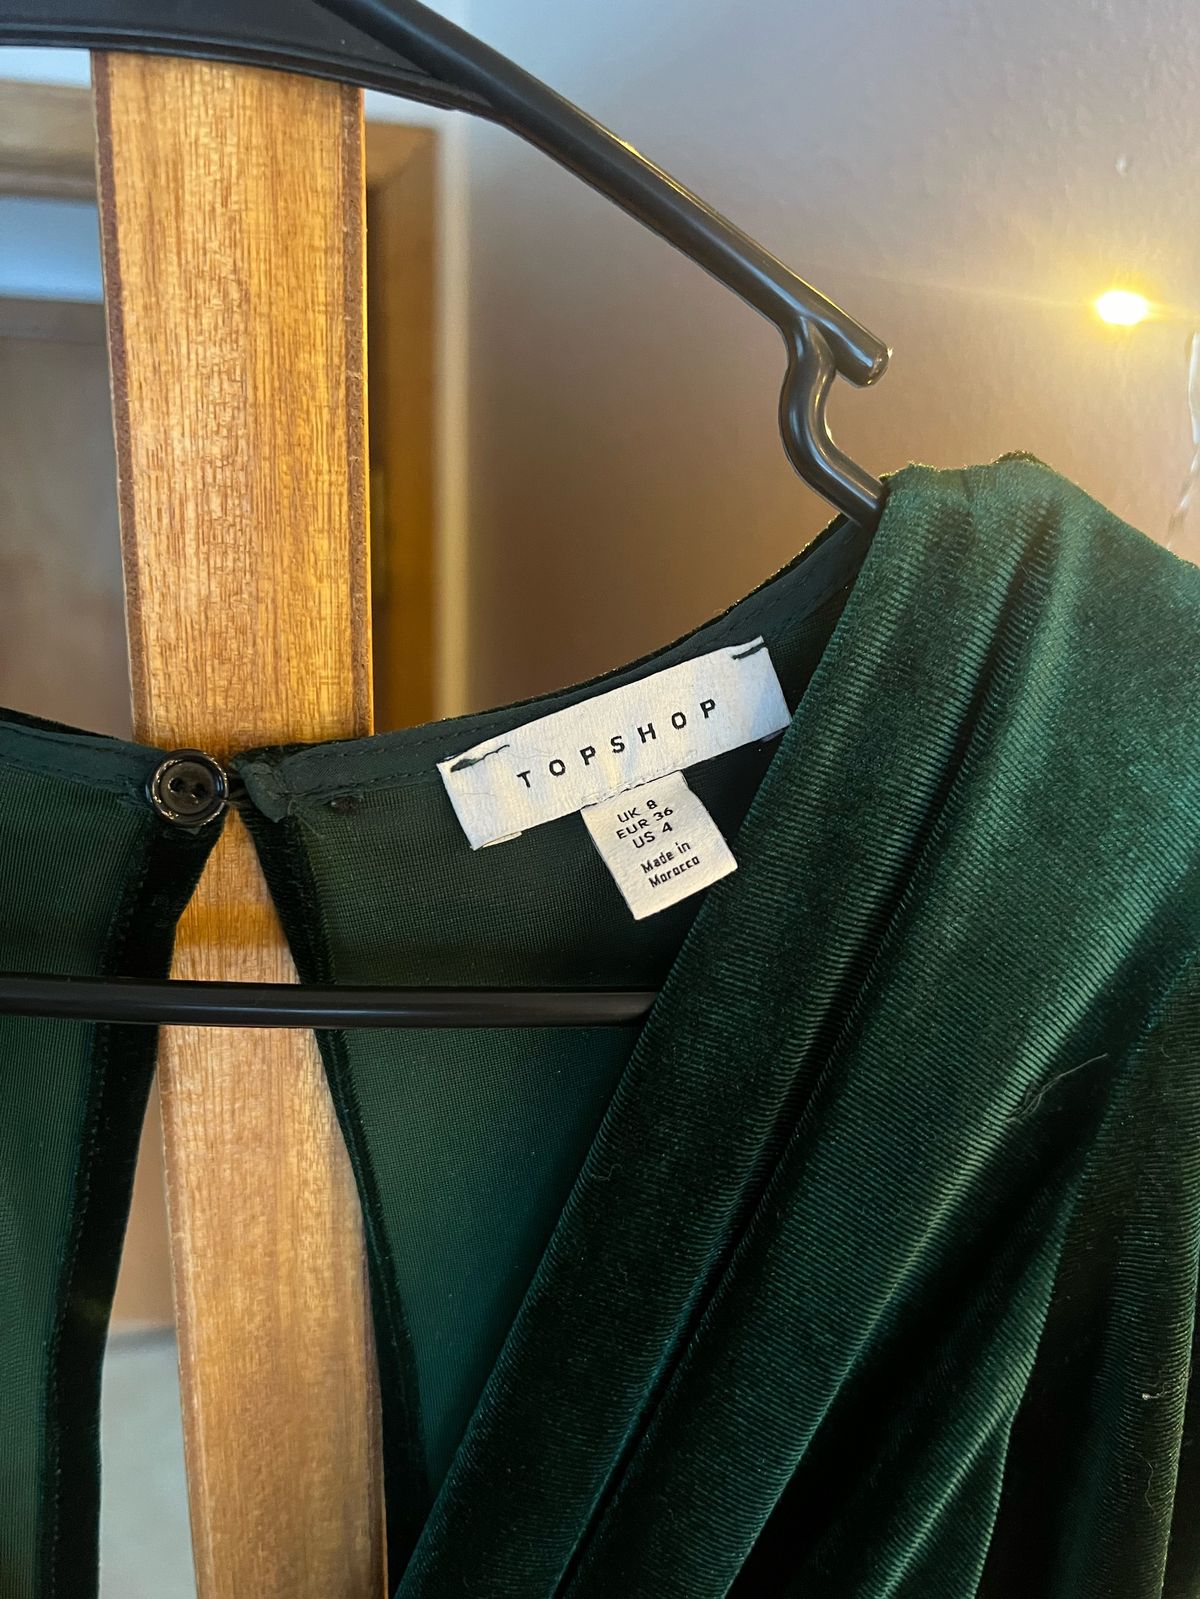 Size 4 Plunge Velvet Green Formal Jumpsuit on Queenly